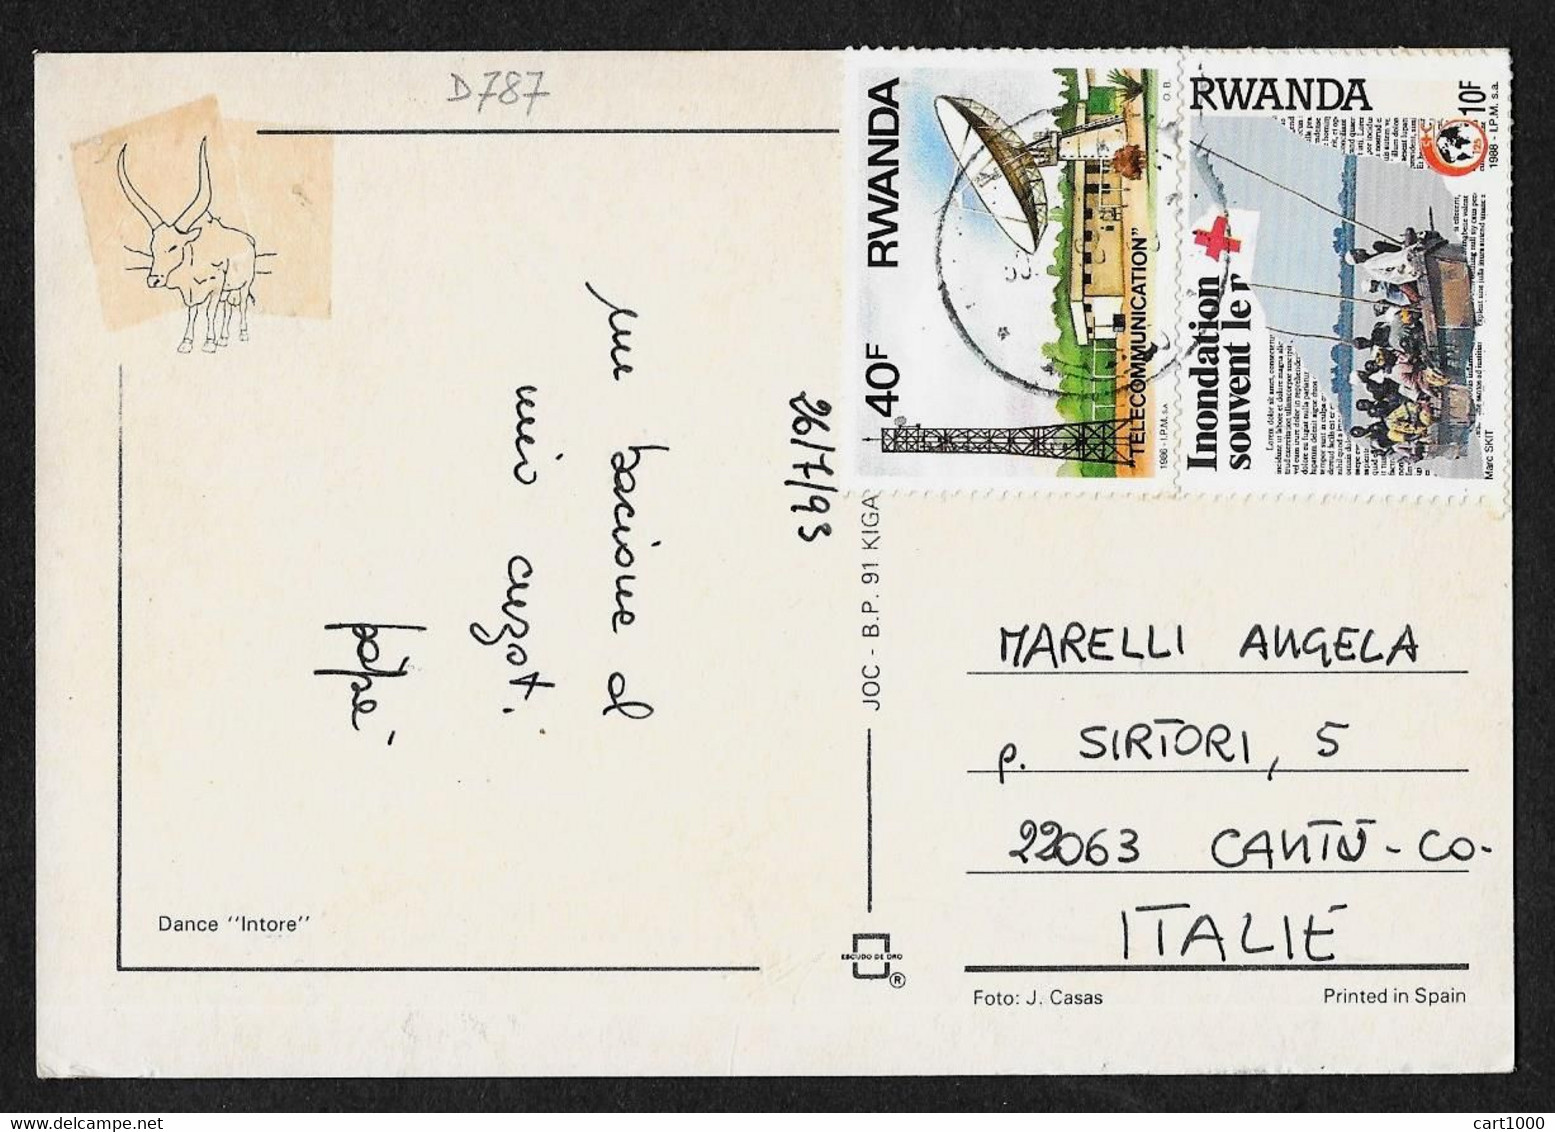 RWANDA 1993 DANCE INTORE N°D787 - Rwanda